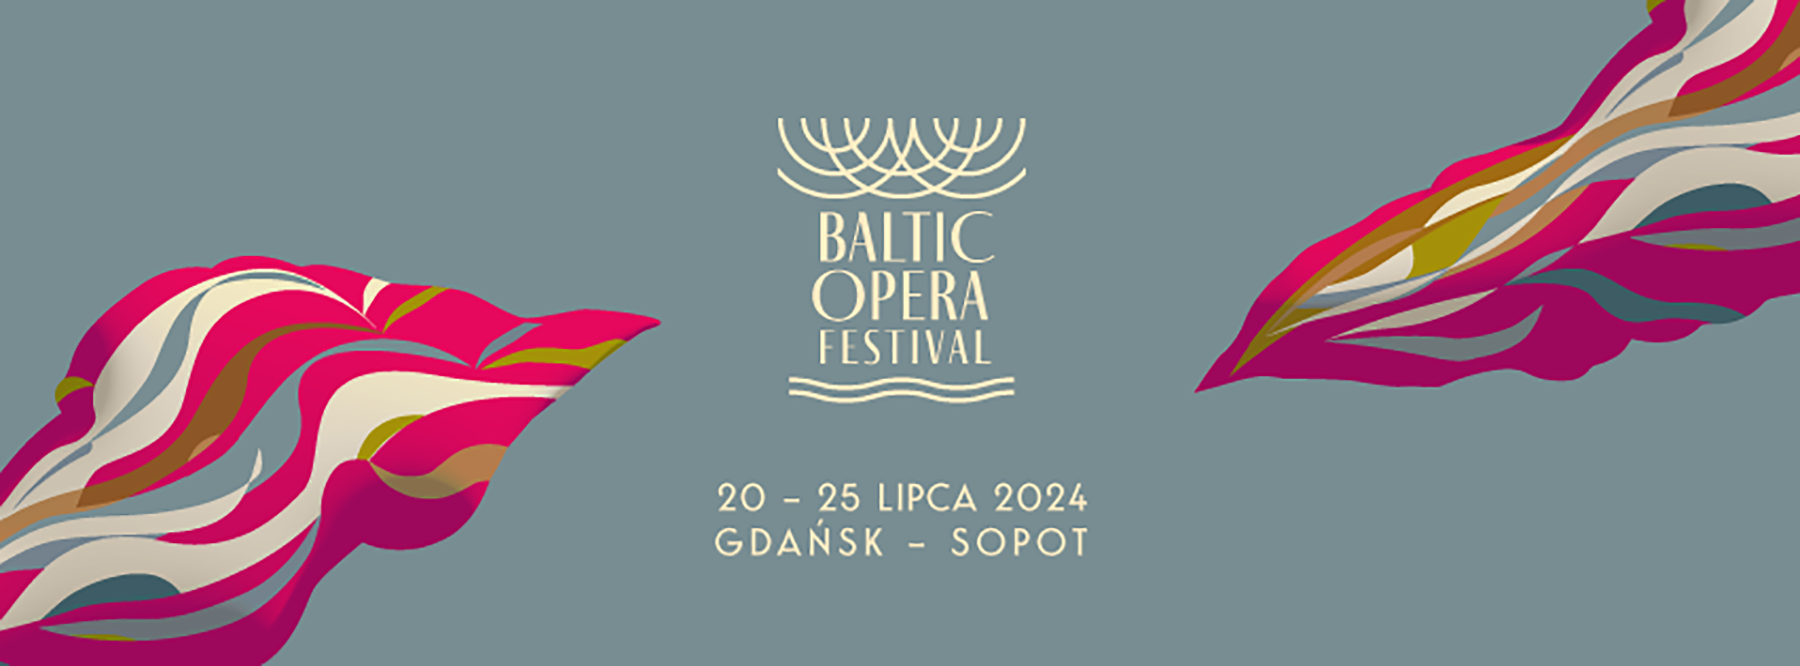 Baltic Opera Festival ogłasza daty i program tegorocznej edycji